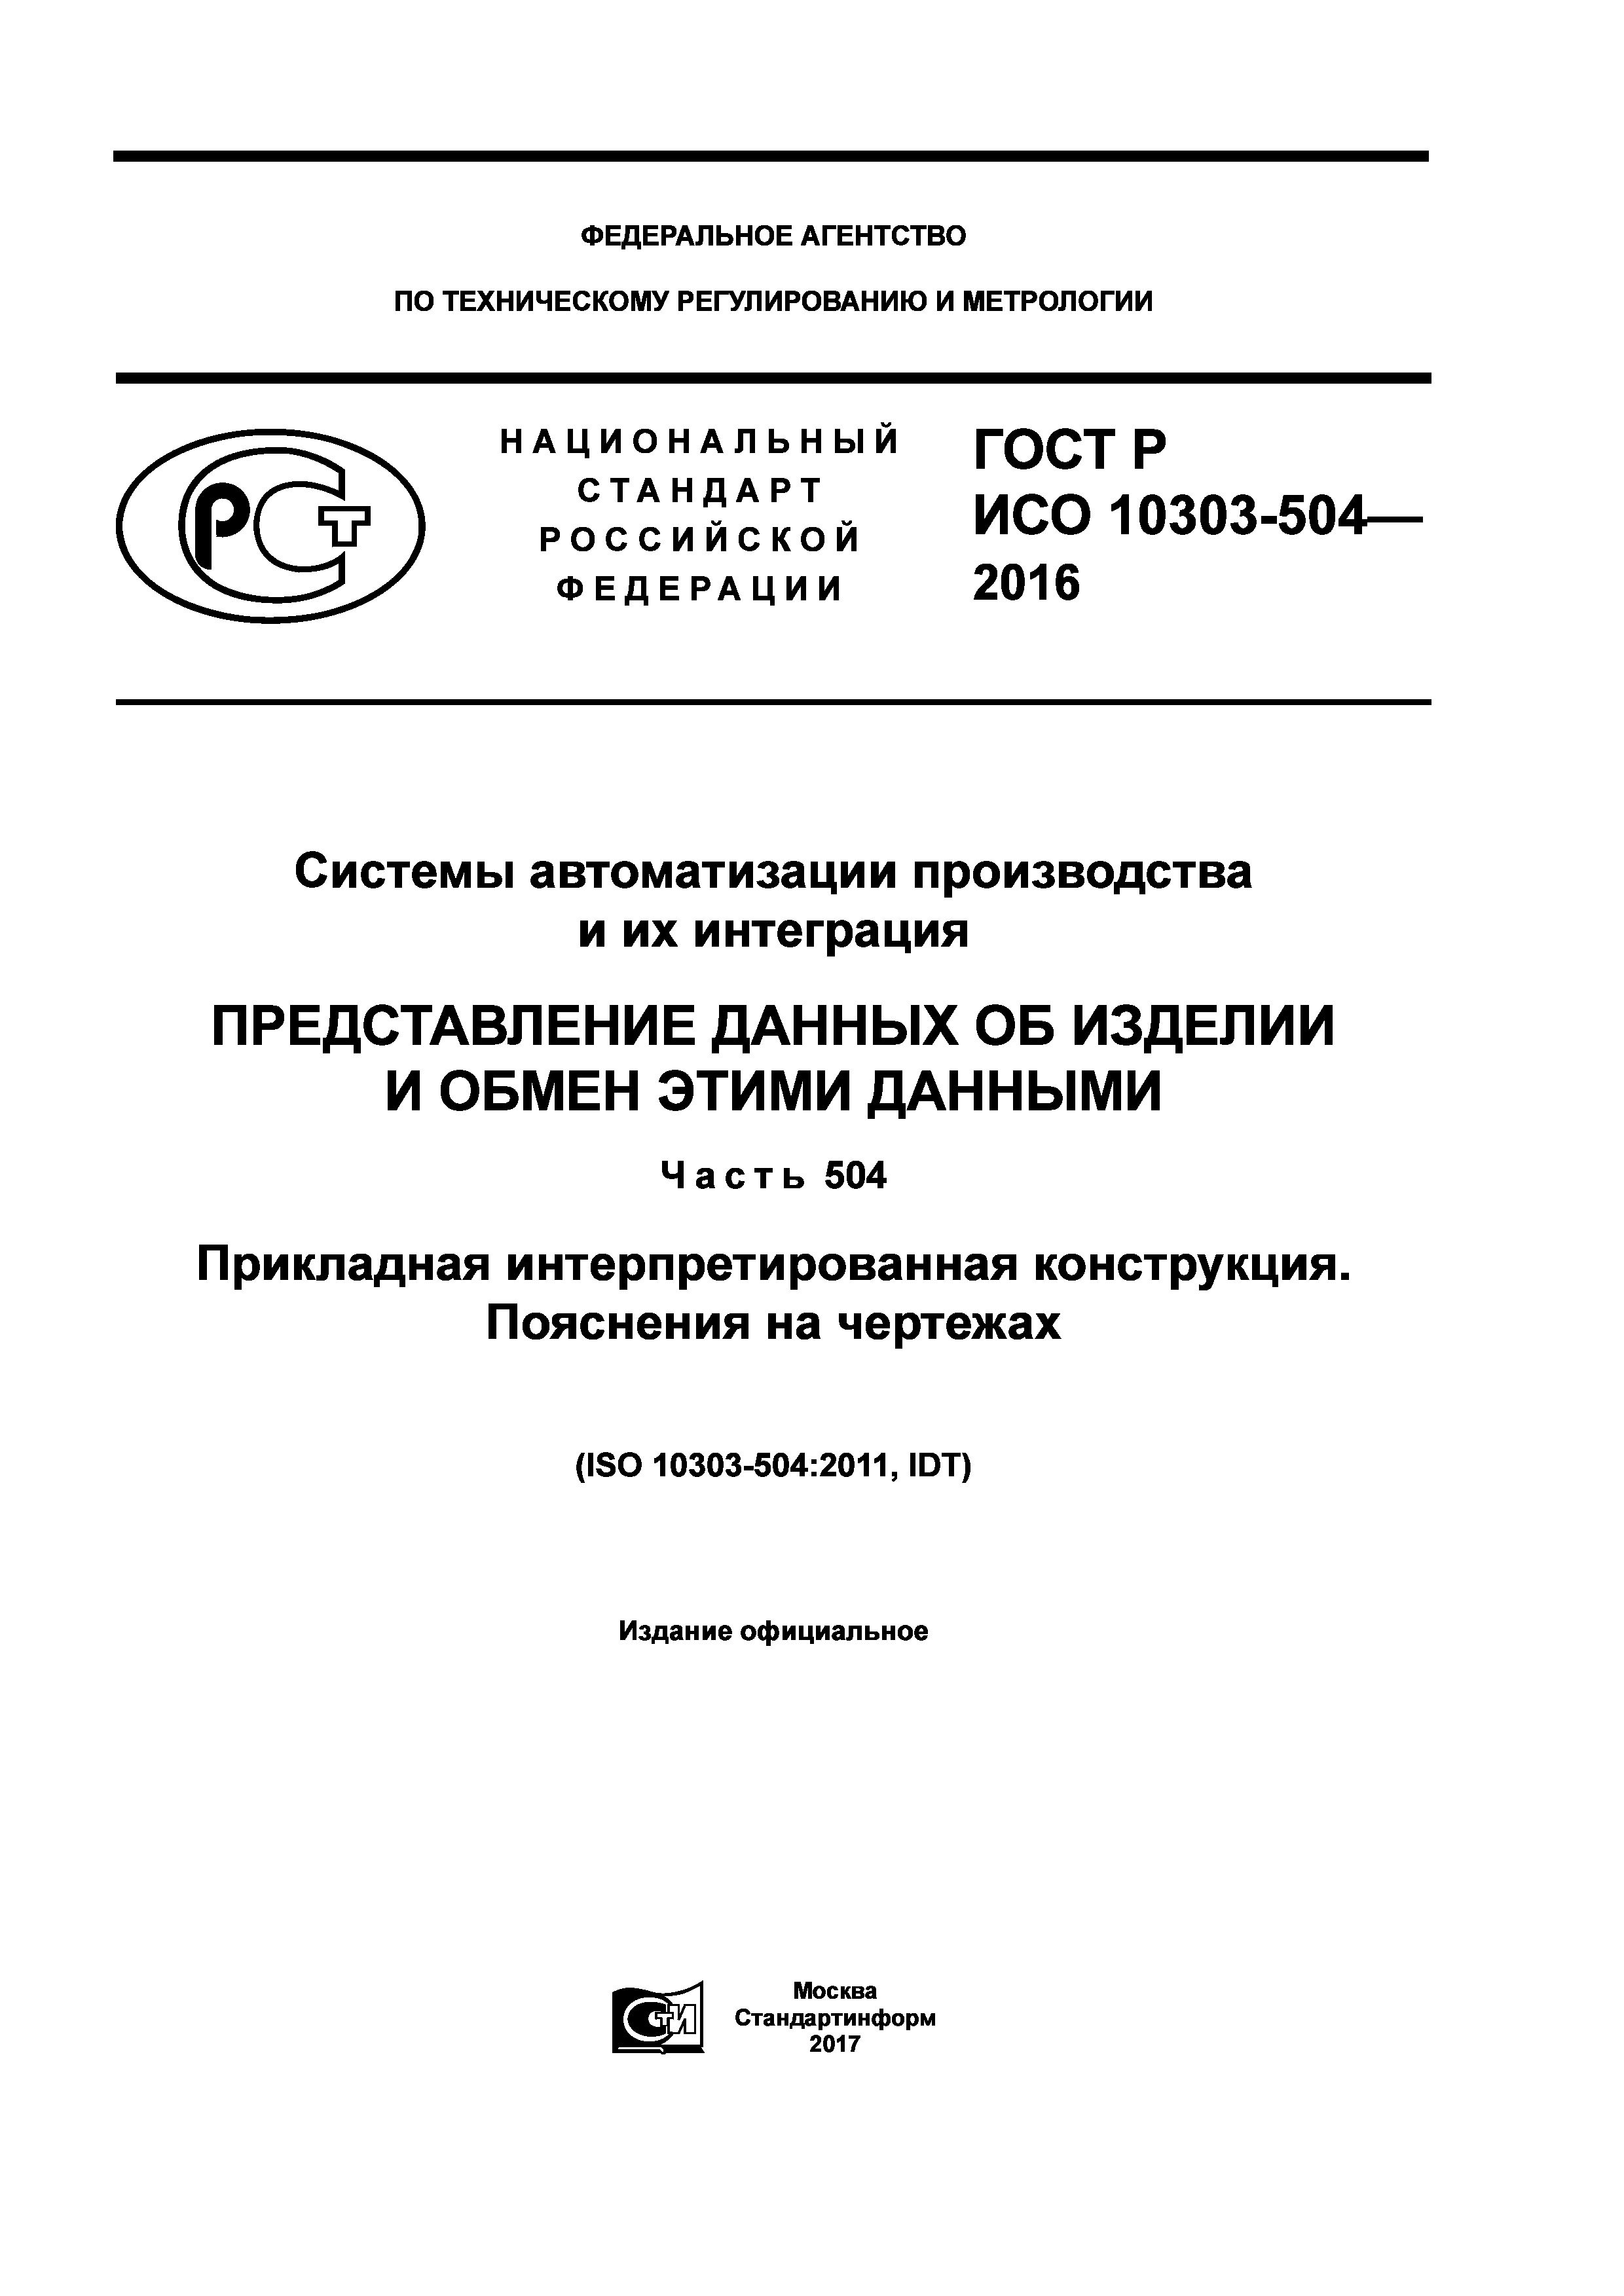 ГОСТ Р ИСО 10303-504-2016